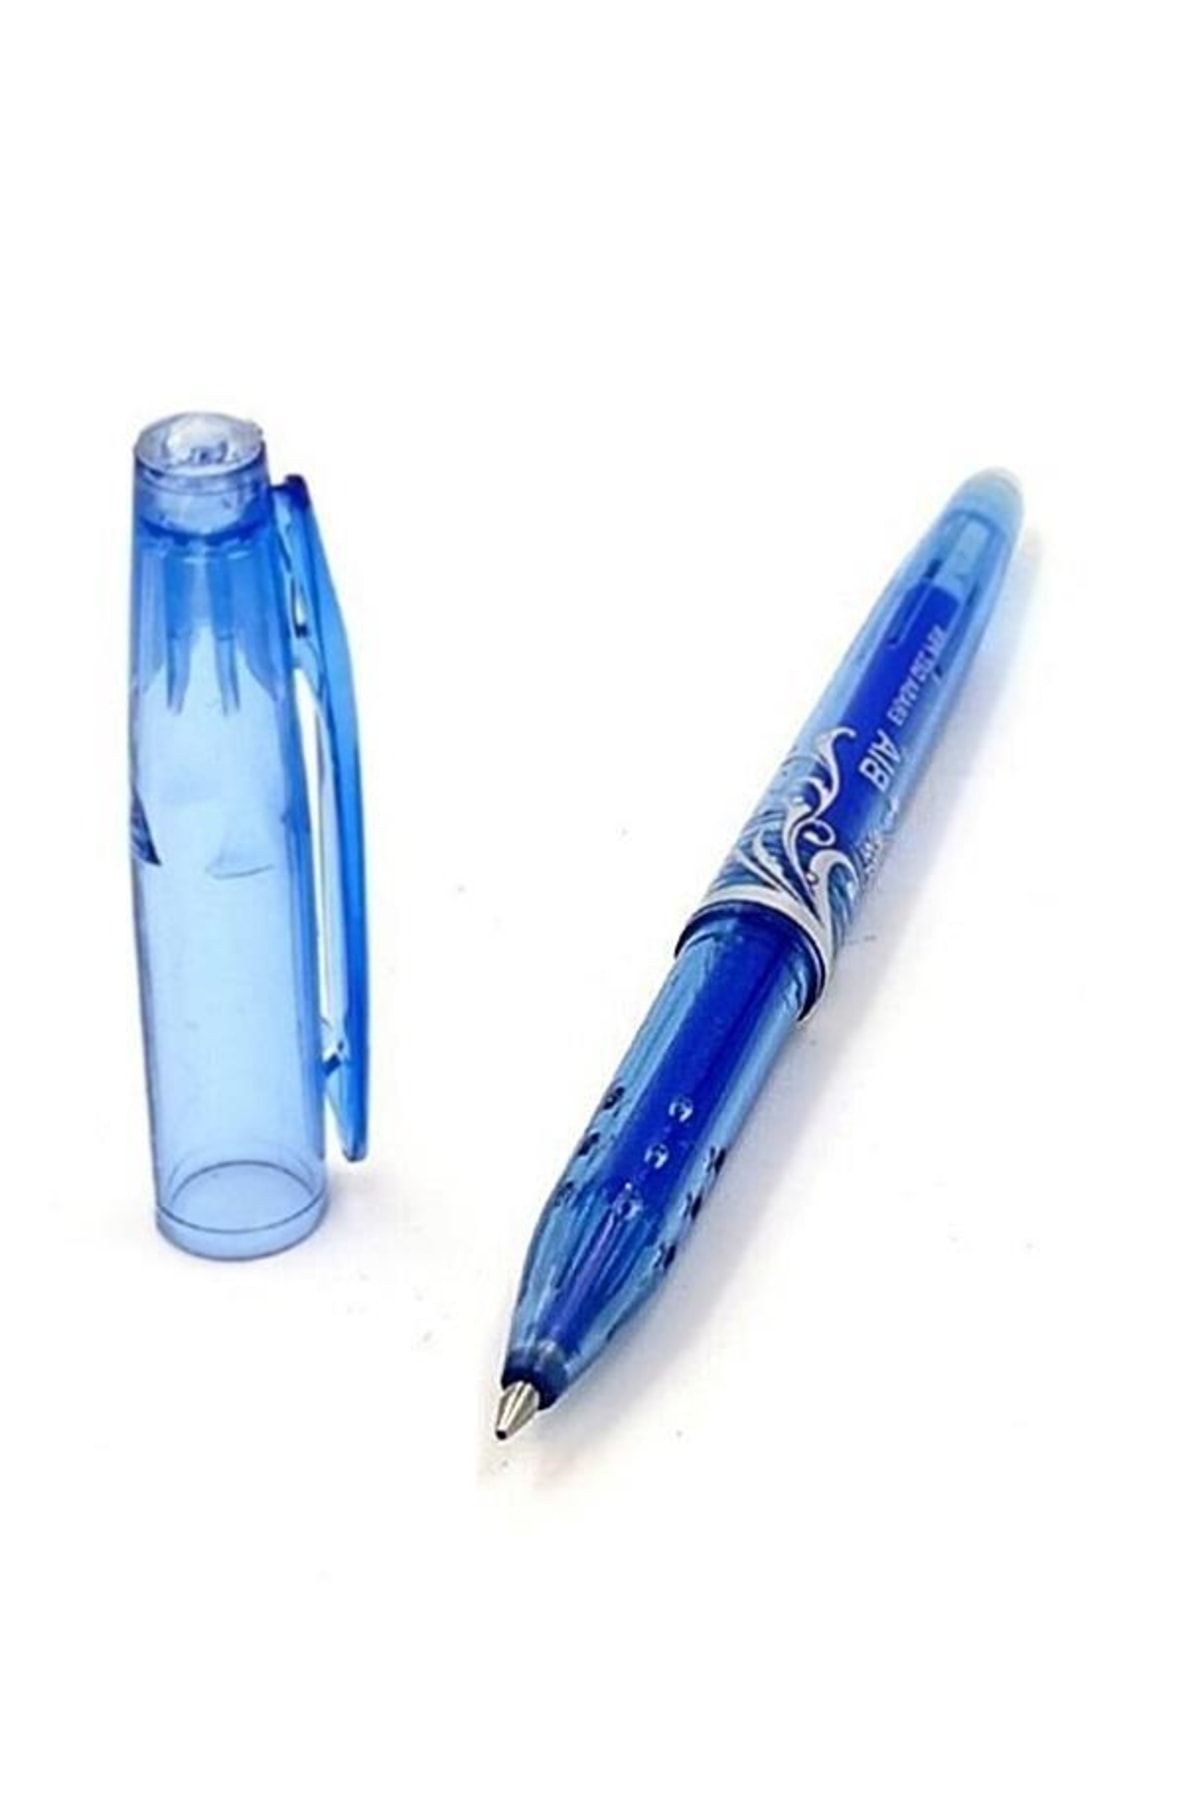 Bia Silinebilir Tükenmez Kalem Ütüyle Isıyla Uçan Silinen Kumaş Kalemi 1 Adet Mavi